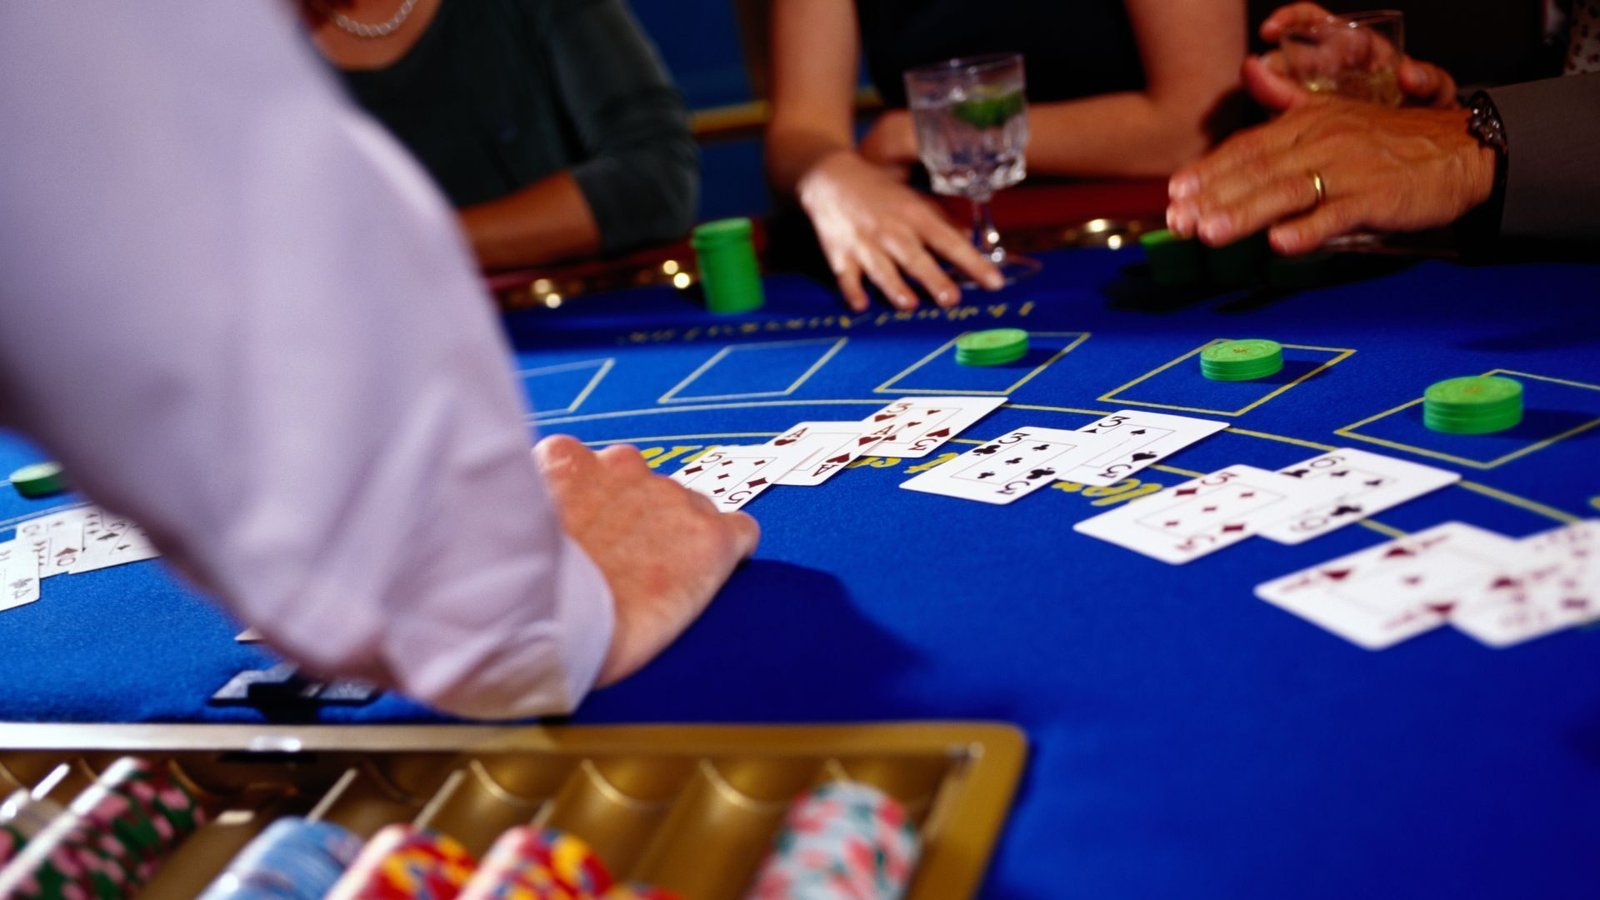 blackjack-guide-blackjack-strategy-betting-strategy-play-blackjack-dealer-stands-split-aces-blackjack-strategy-blackjack-charts-basic-rules-initial-bet-insurance-bet-dealer-stands-single-deck-game-dealer-shows-original-bet-strategy-card